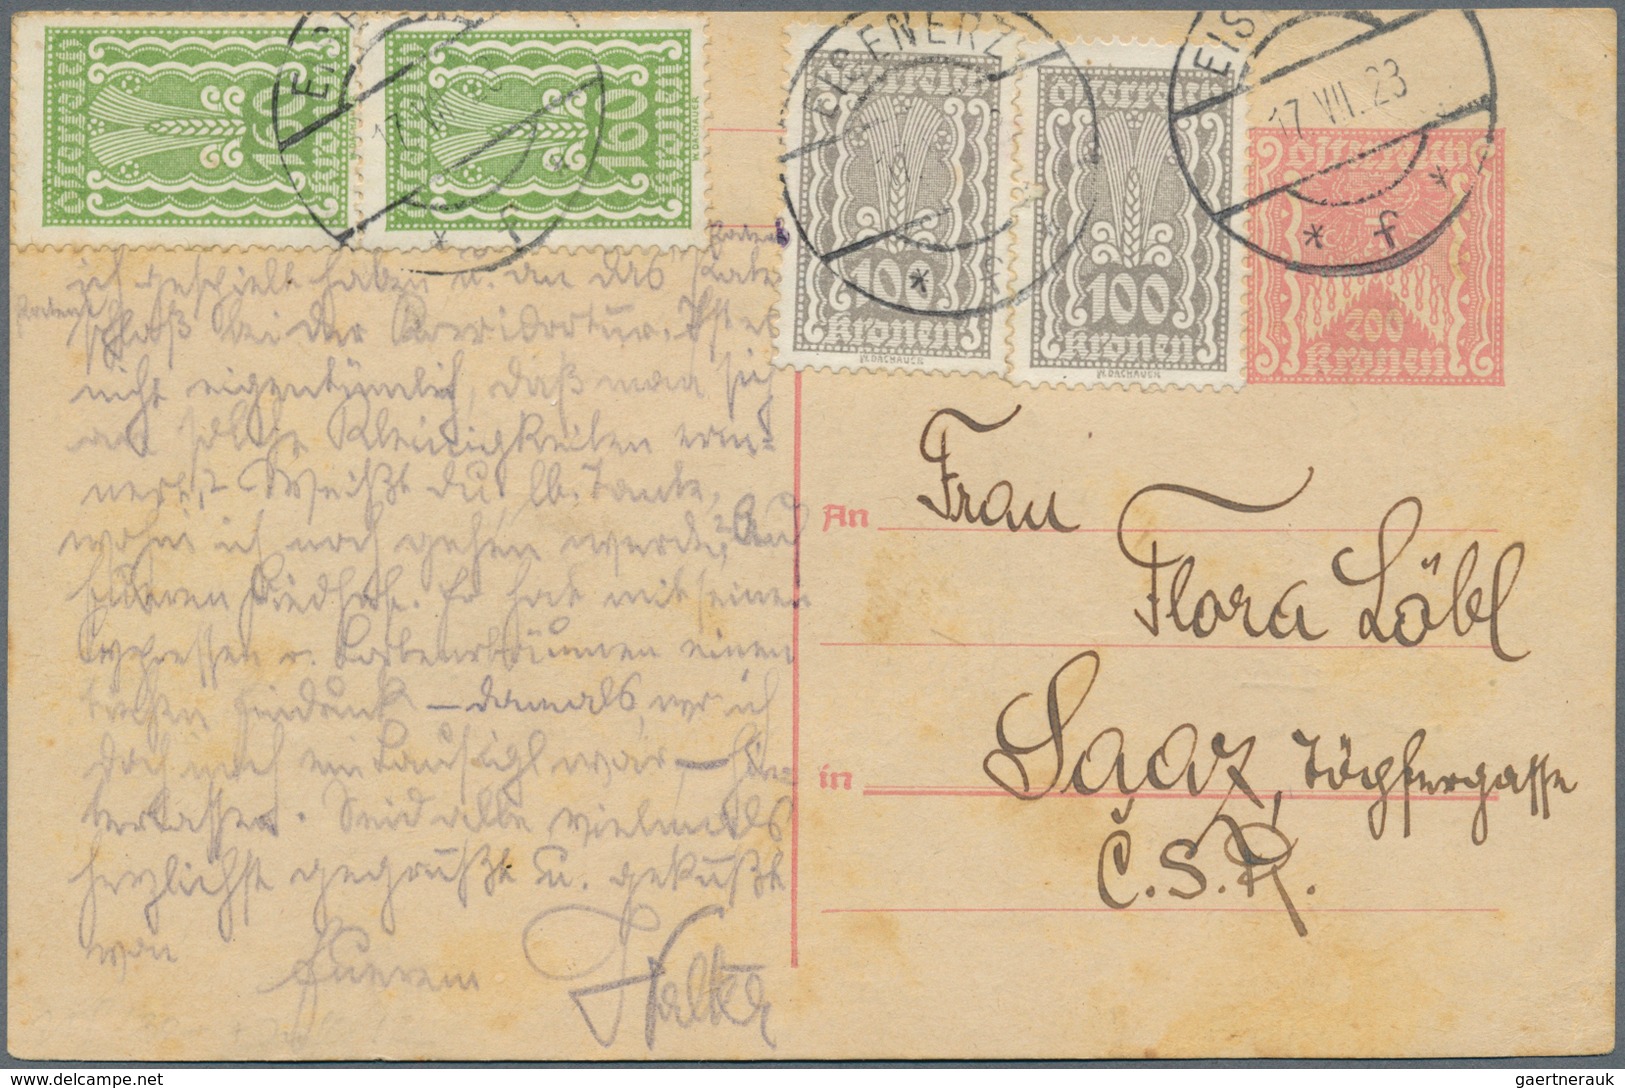 Österreich - Ganzsachen: 1920/1938, interessante Sammlung mit über 180 Ganzsachen-Postkarten der 1.R